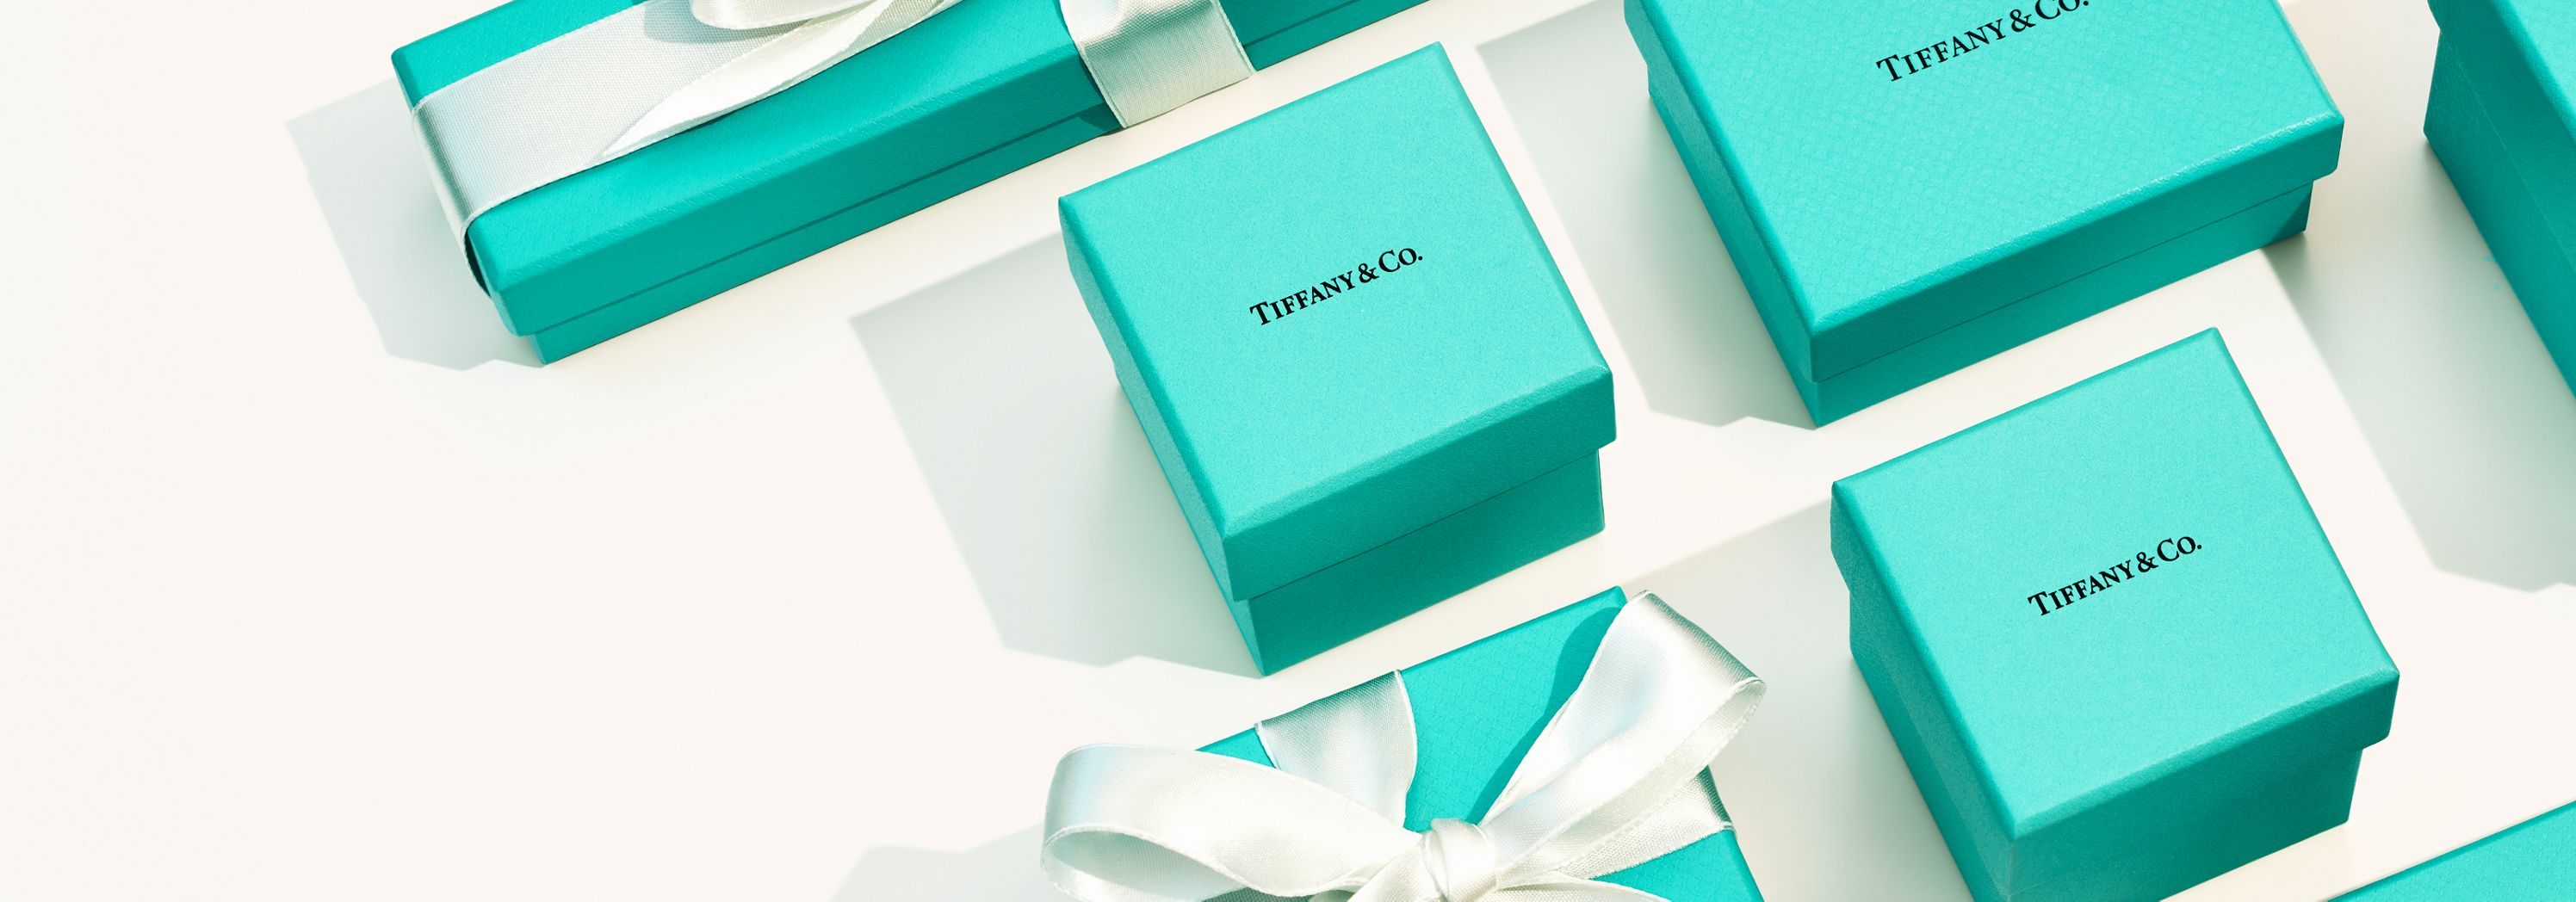 個性あふれるラグジュアリー ギフト | Tiffany & Co.